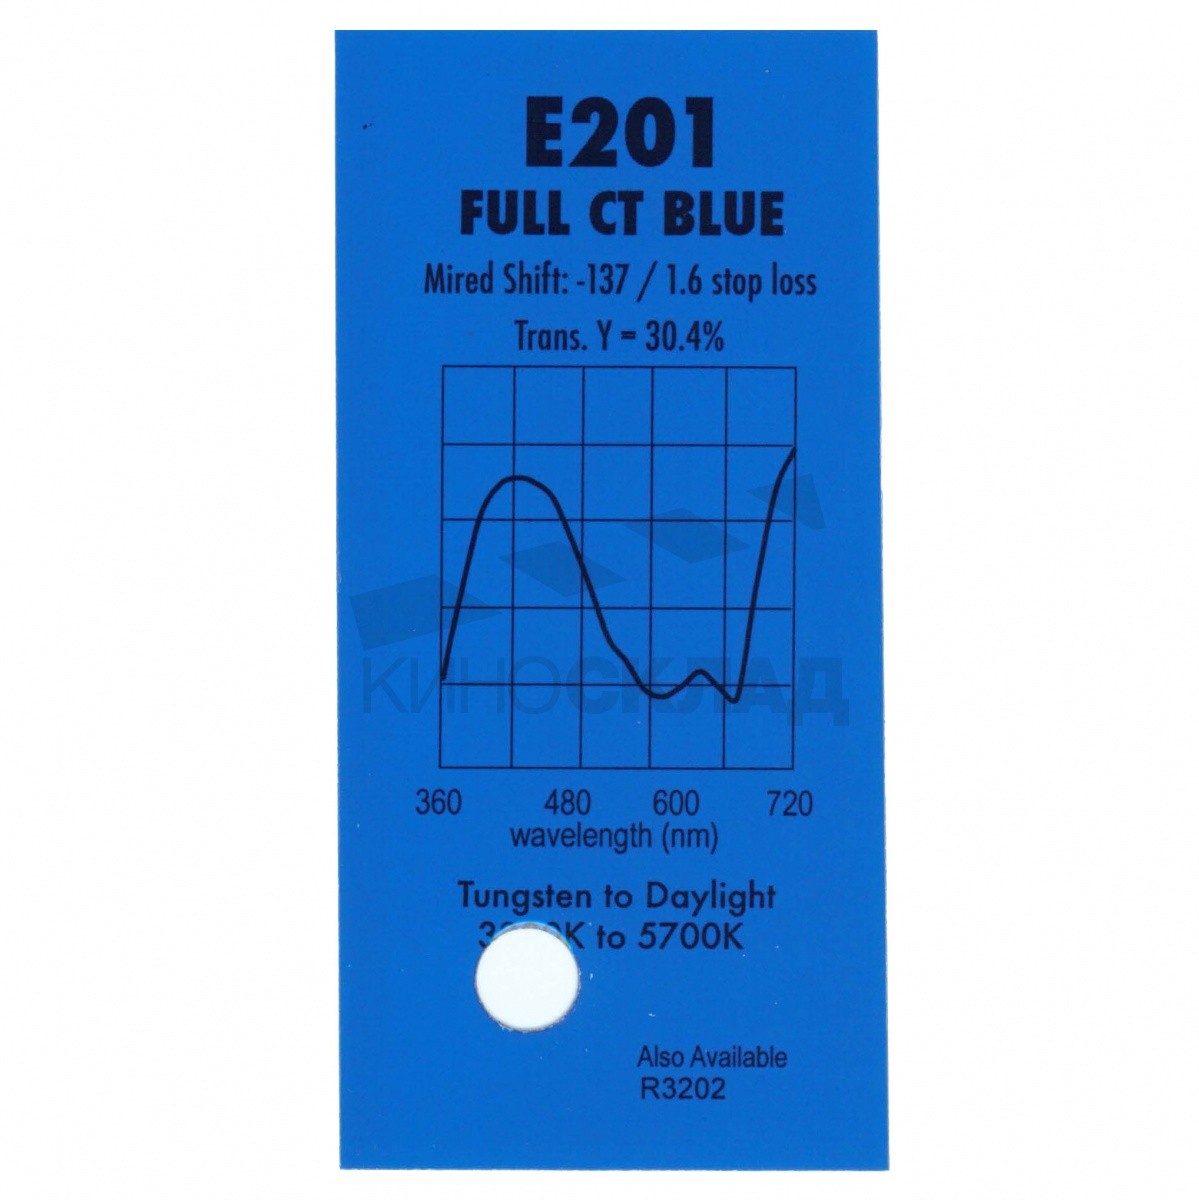 Детальная картинка товара LEE Filters # 201 Full C.T. Blue в магазине Музыкальная Тема